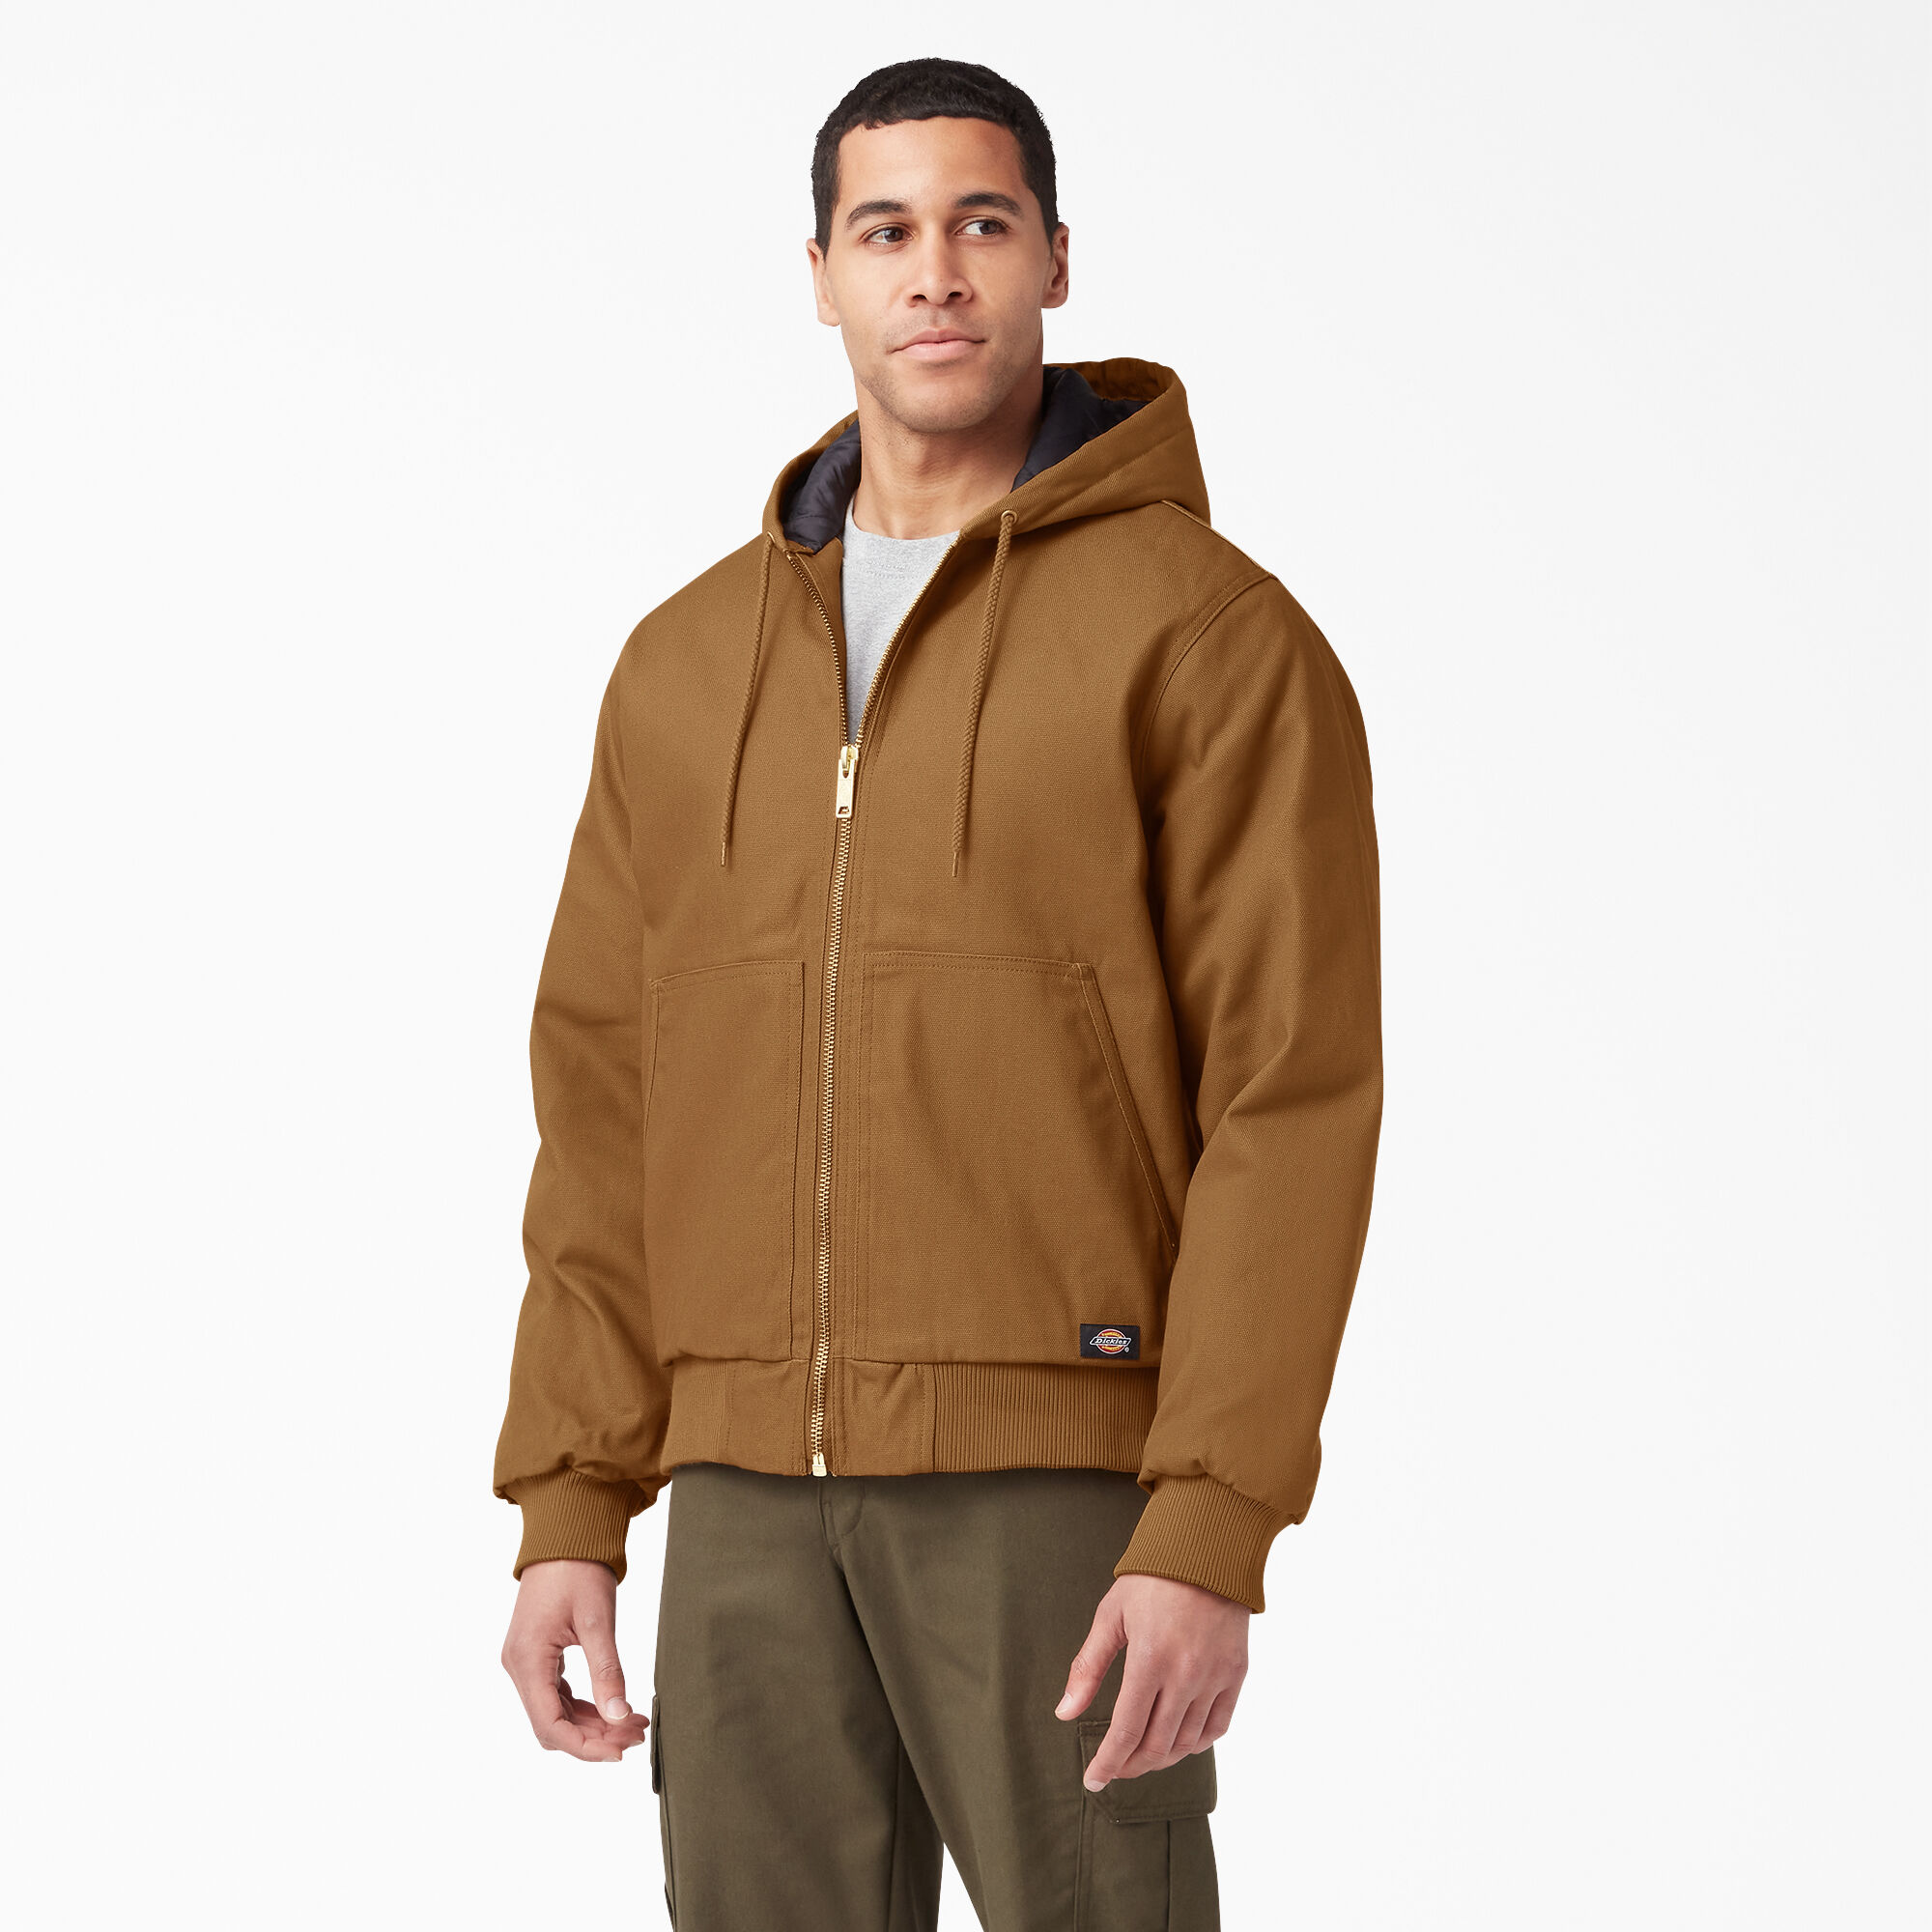 Men's Fleece Top Dickies Abbot 3in1 Waterproof Work Jacket Black Sizes S-XXXL